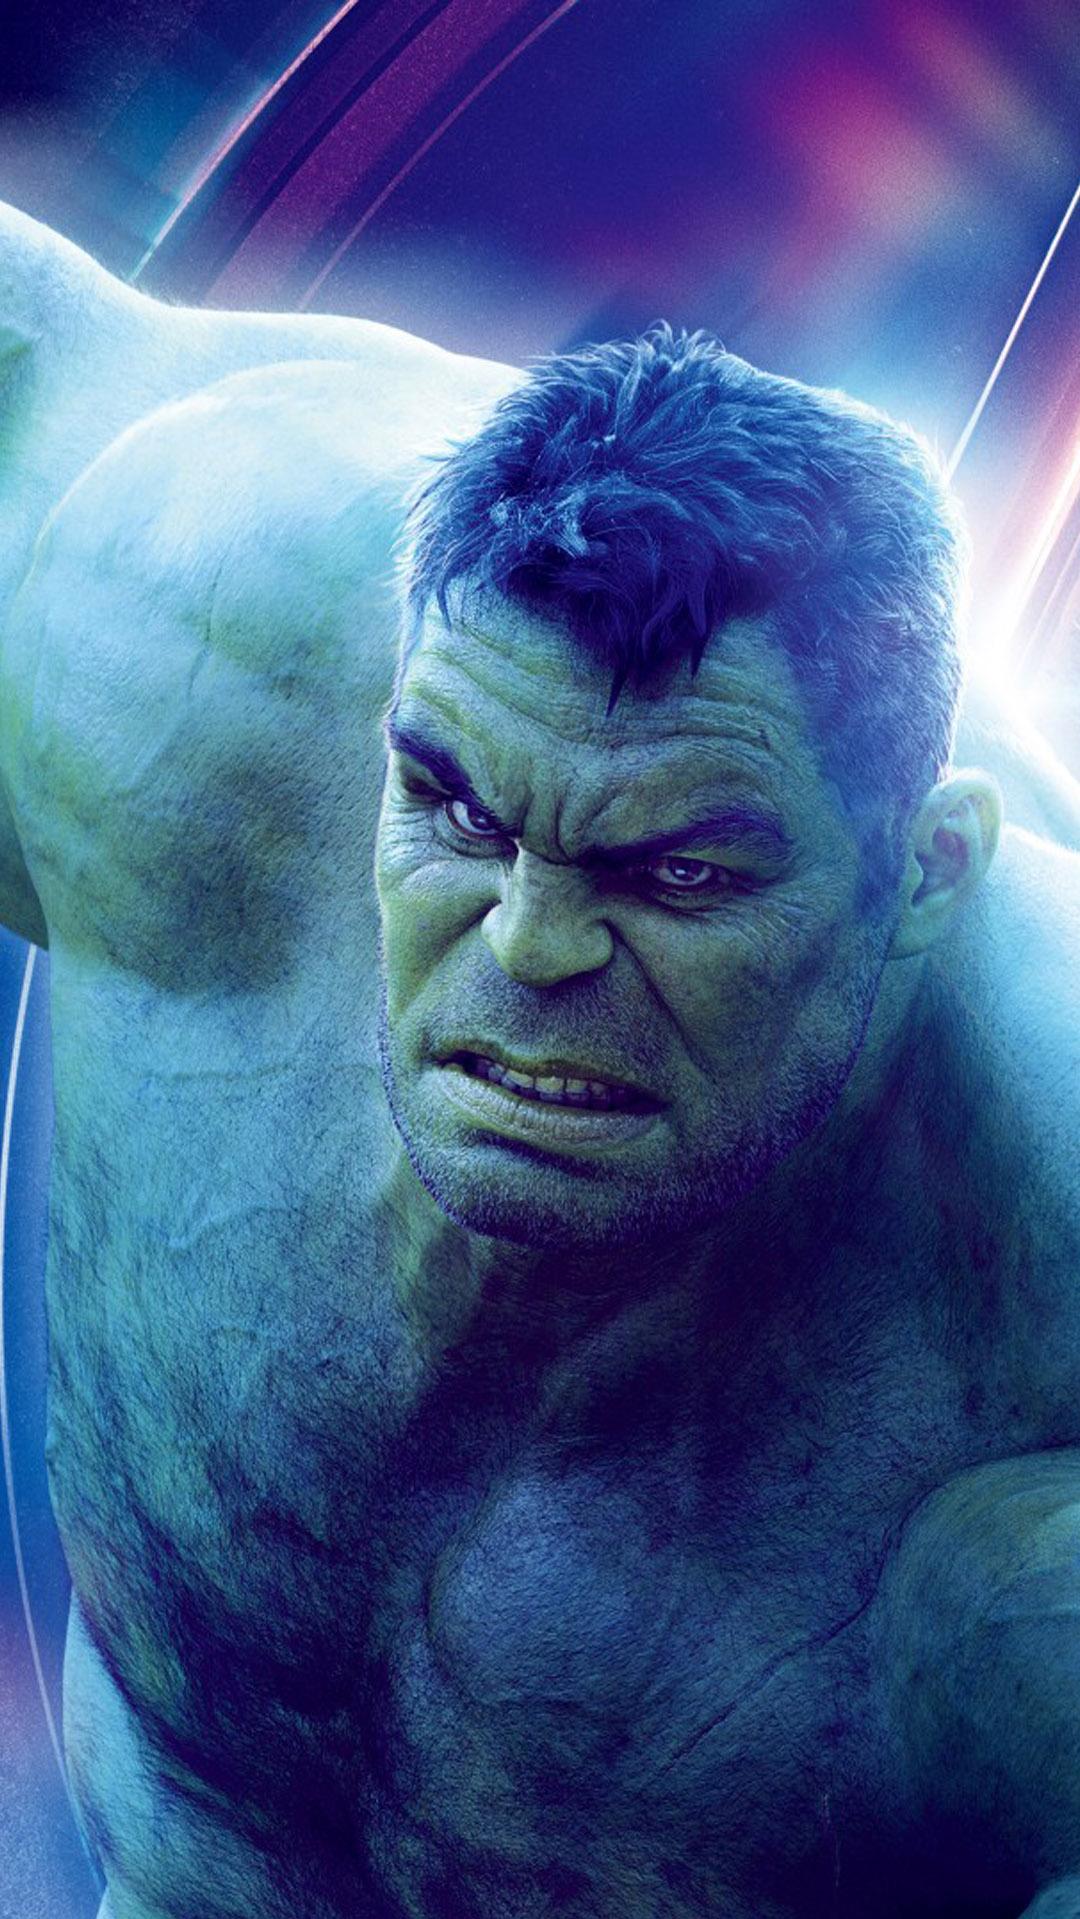 Hulk In Avengers Infinity War 4K Ultra HD Mobile Wallpaper